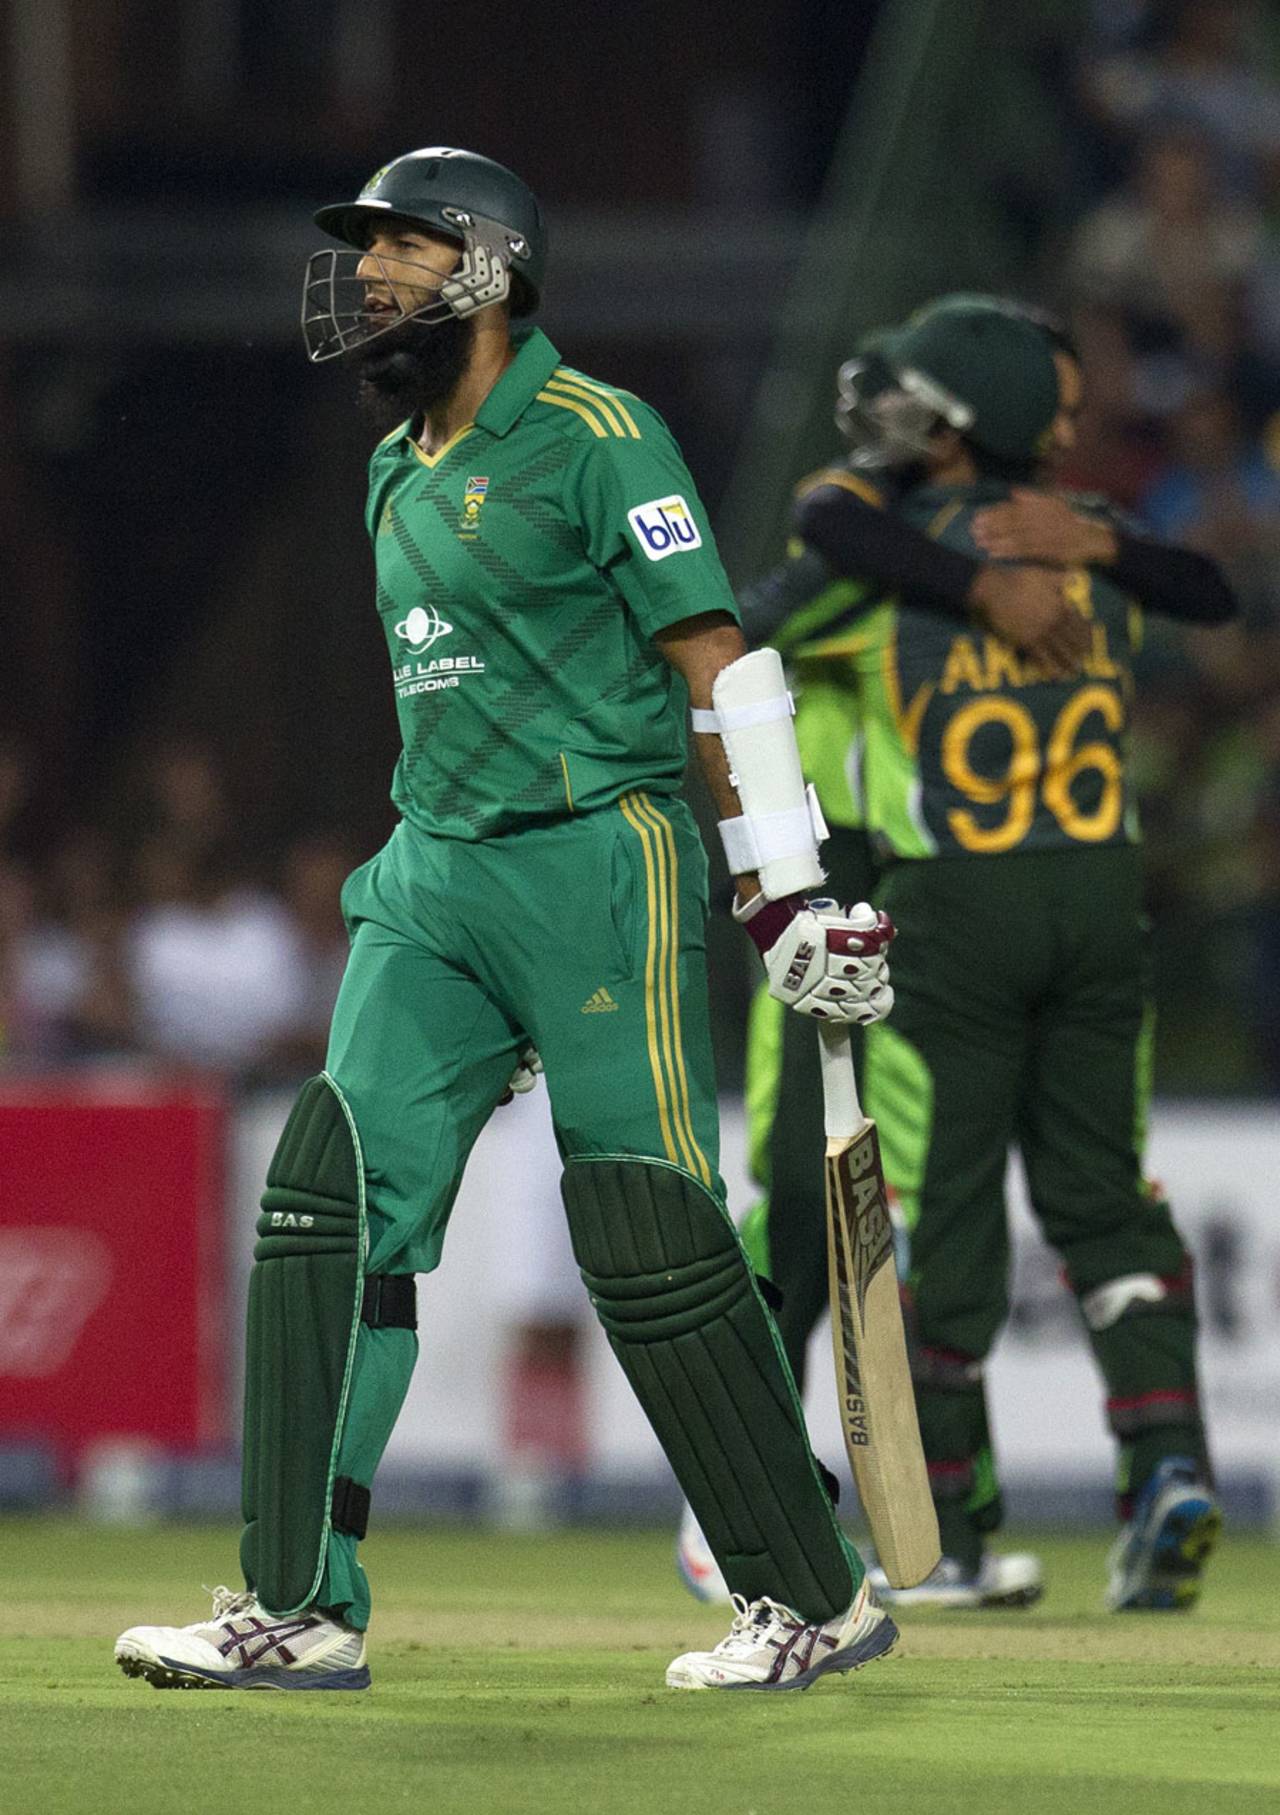 Hashim Amla was dismissed for 31, South Africa v Pakistan, 1st T20I, Johannesburg, November 20, 2013